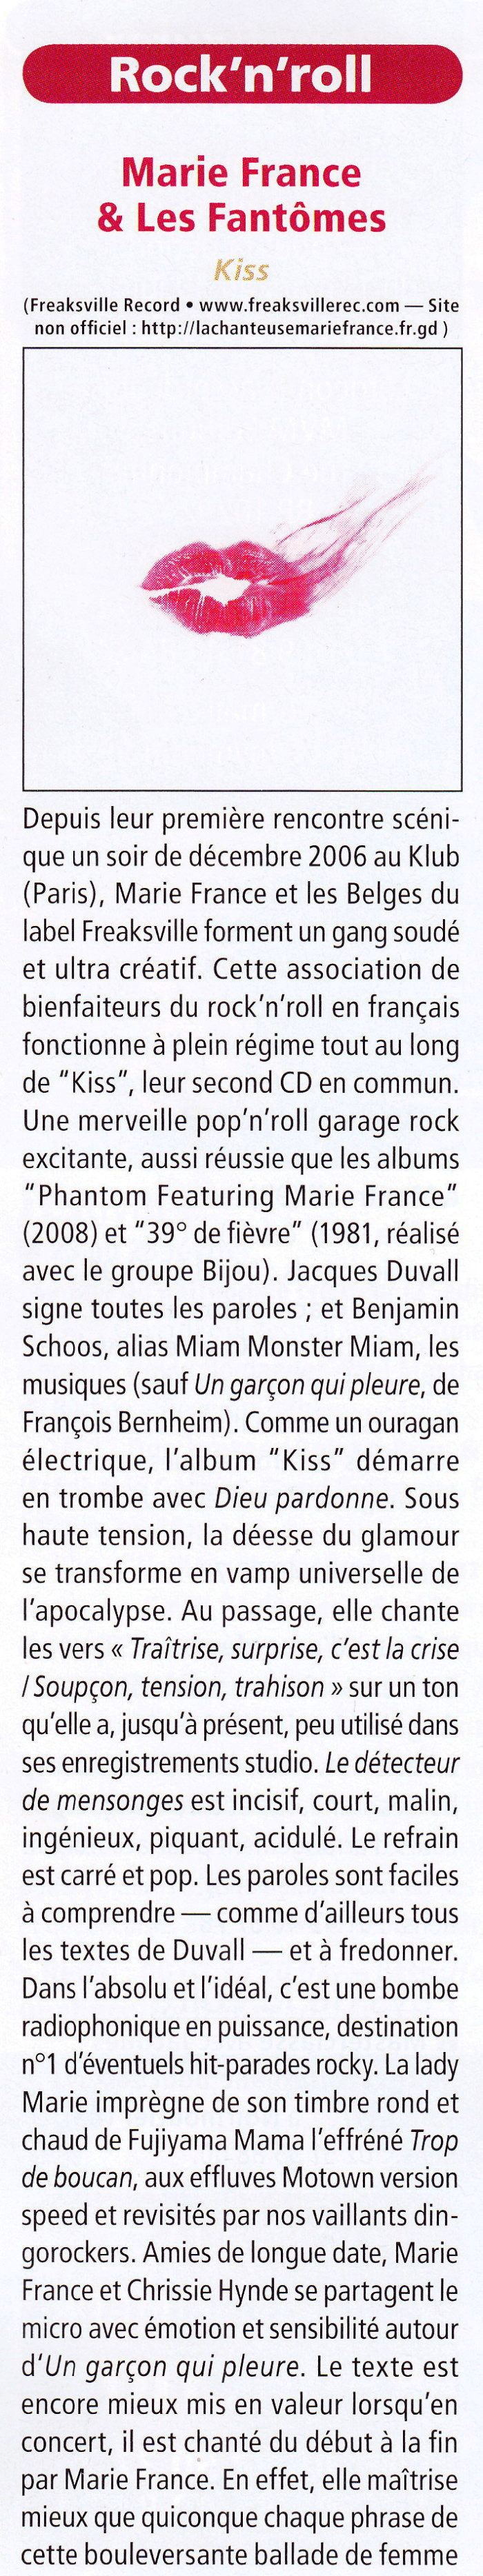 MARIE FRANCE + BENJAMIN SCHOOS & LES EXPERTS EN DESESPOIR interprètent les chansons de JACQUES DUVALL 15/11/2011 TROIS BAUDETS (Paris) : compte rendu 1201250908461423619347295